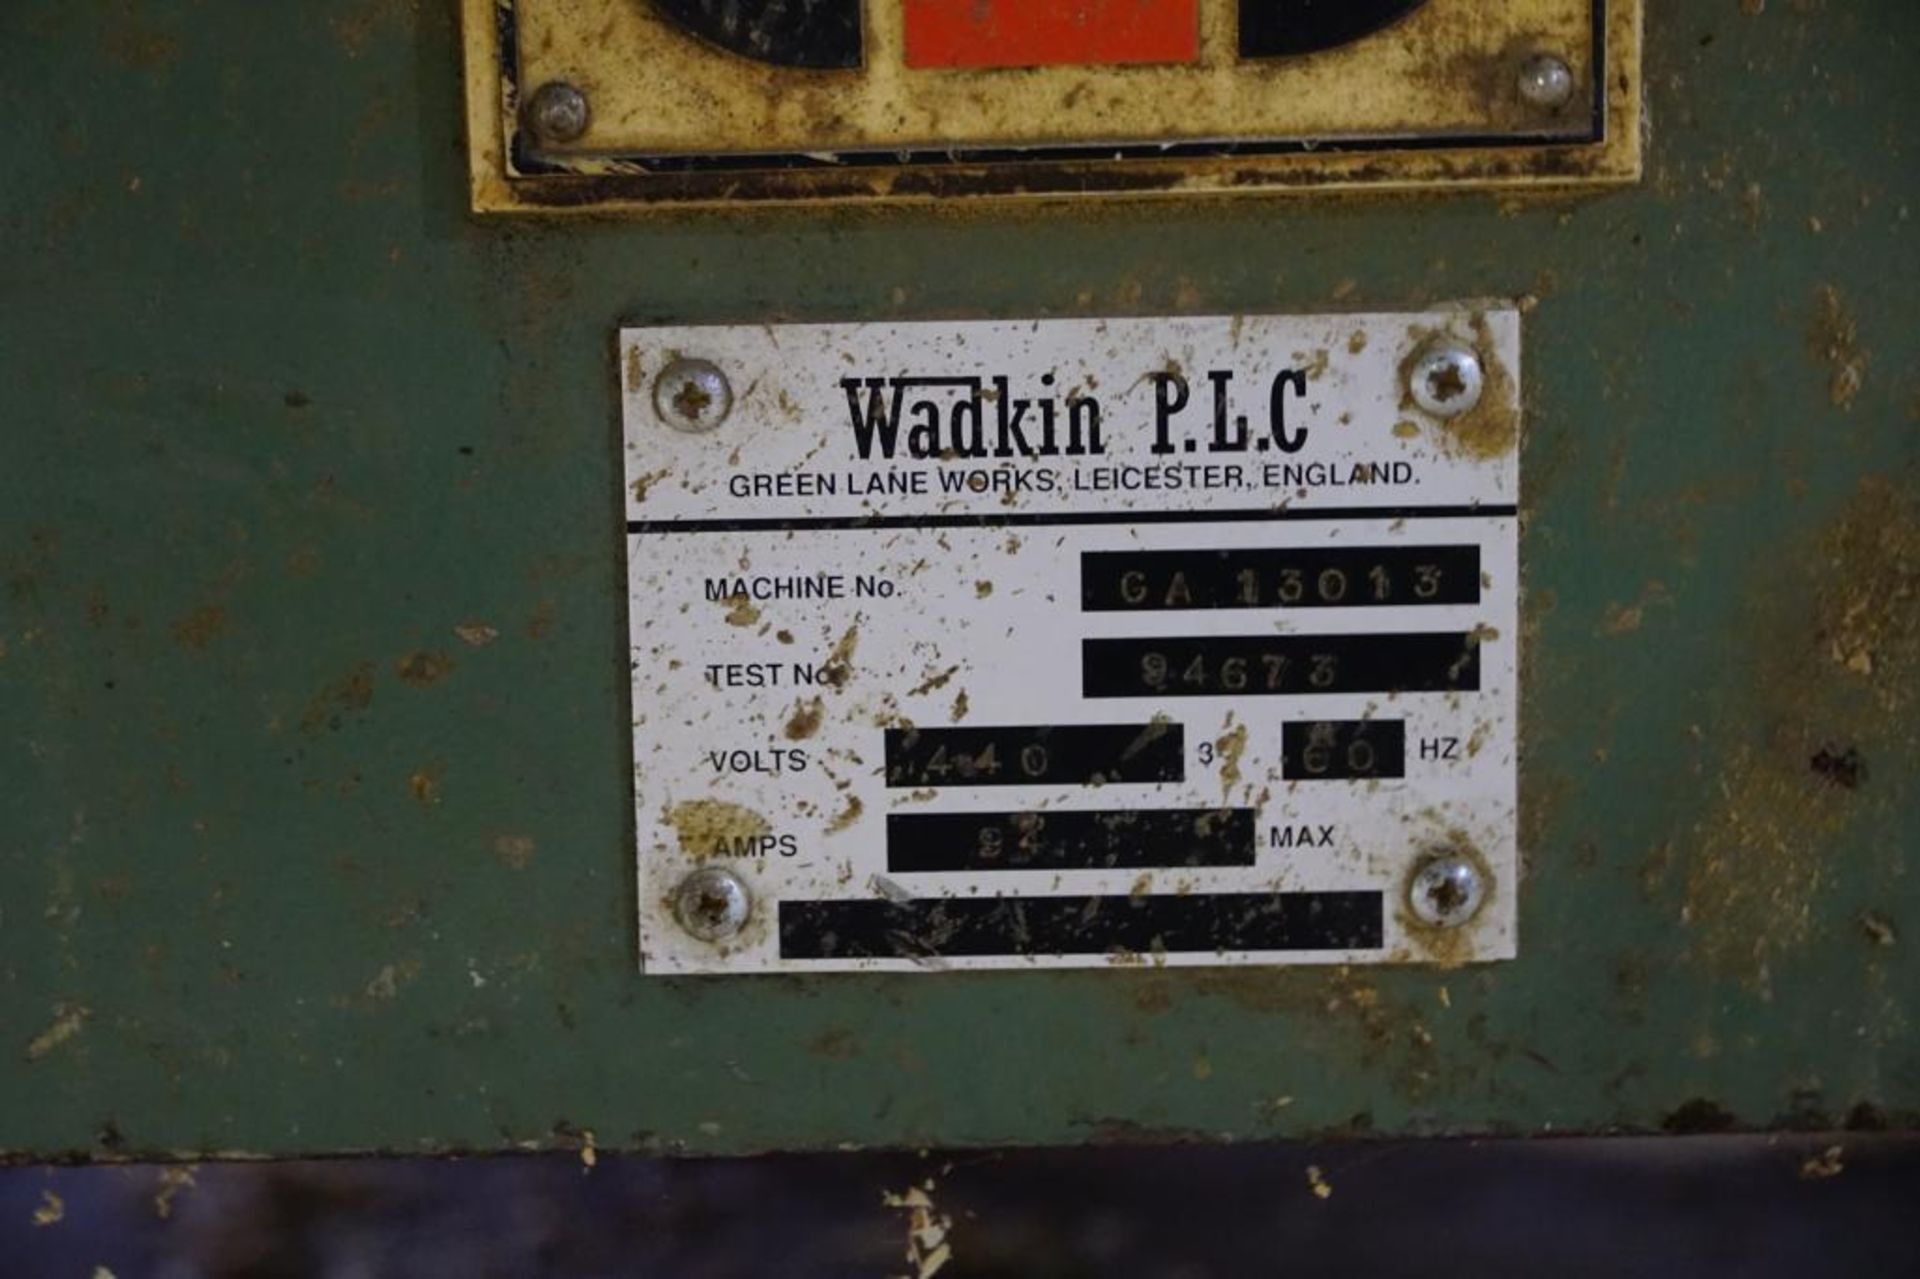 Wadkin P.L.C. Planer/Moulder - Image 18 of 18